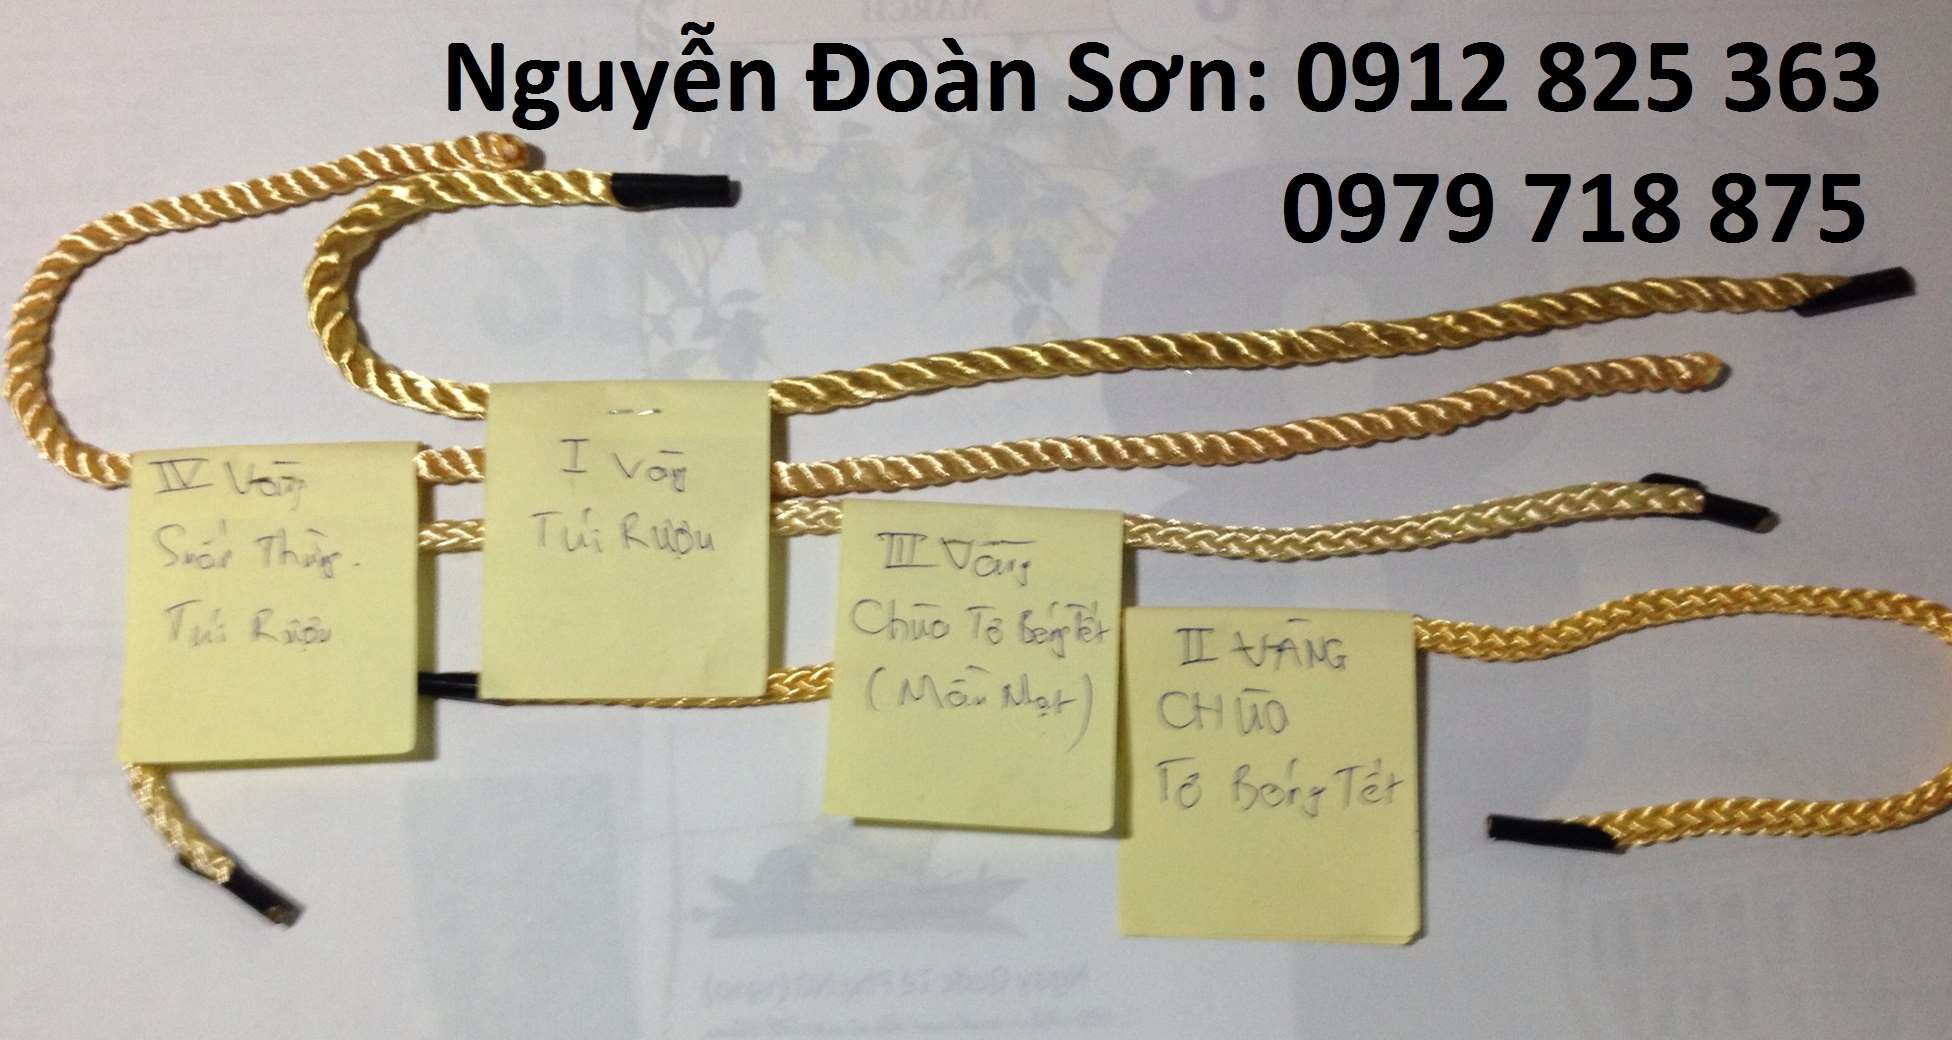 Dây quai túi giấy các loại - Dây Quai Túi Nguyễn Đoàn Sơn - Công Ty TNHH Thương Mại Nguyễn Đoàn Sơn